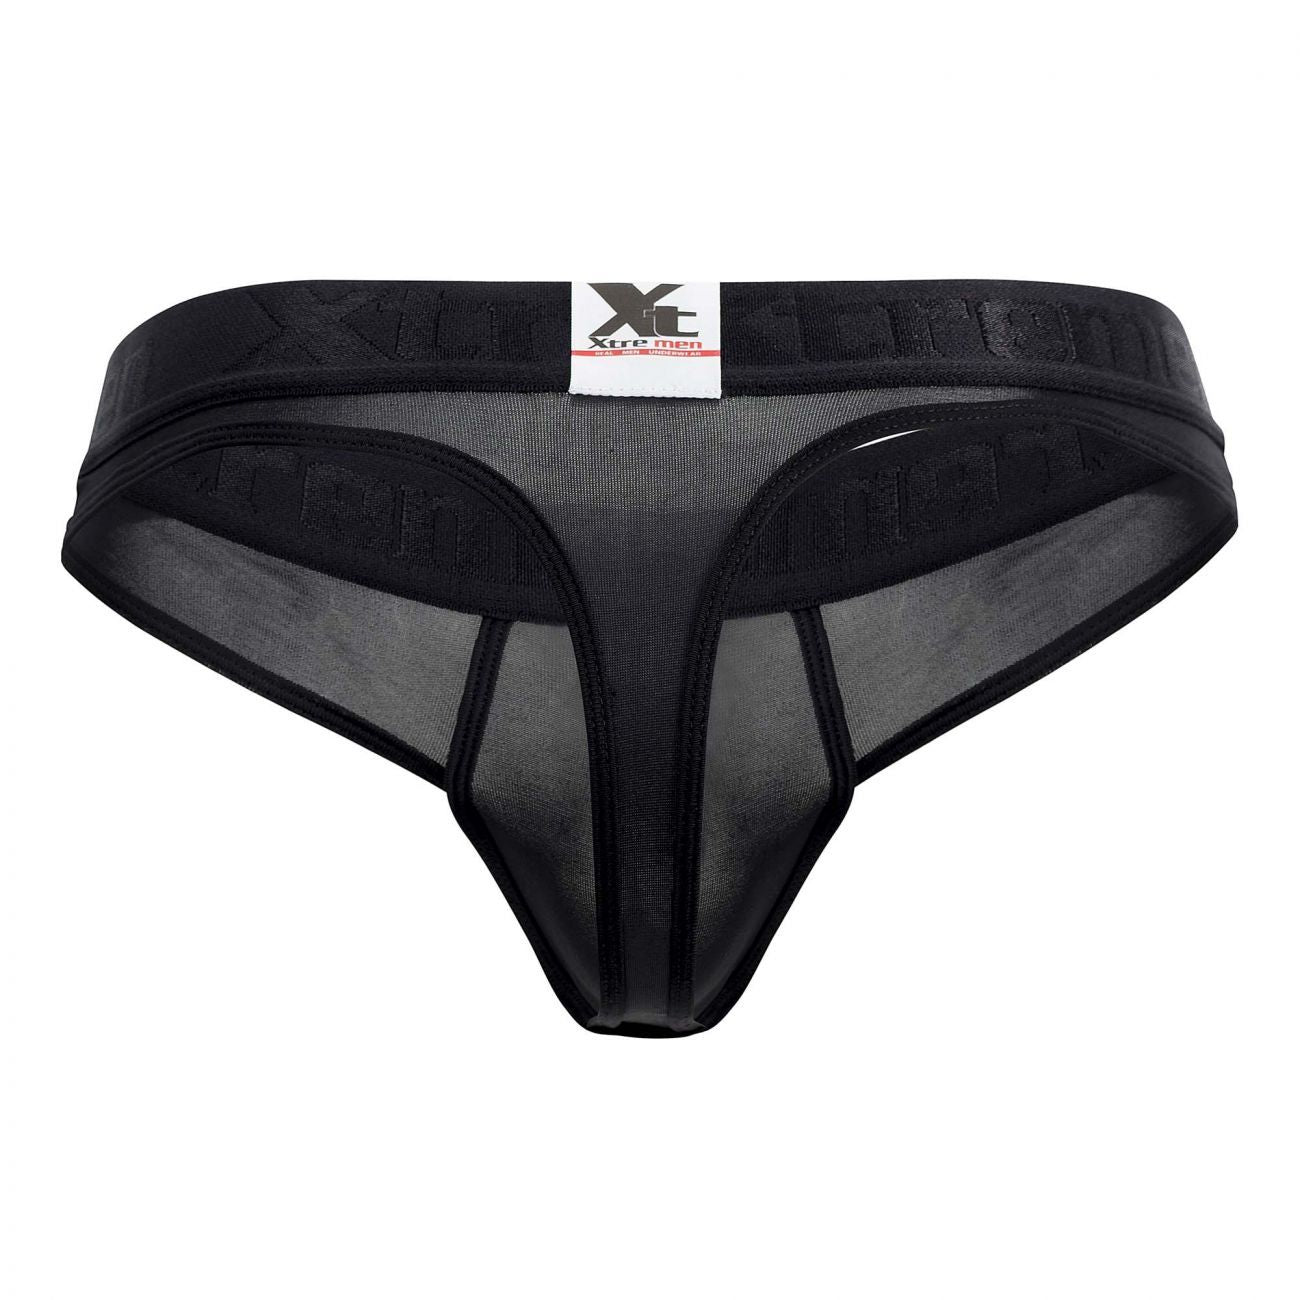 Xtremen 91031-3 3PK Piping Thongs Black